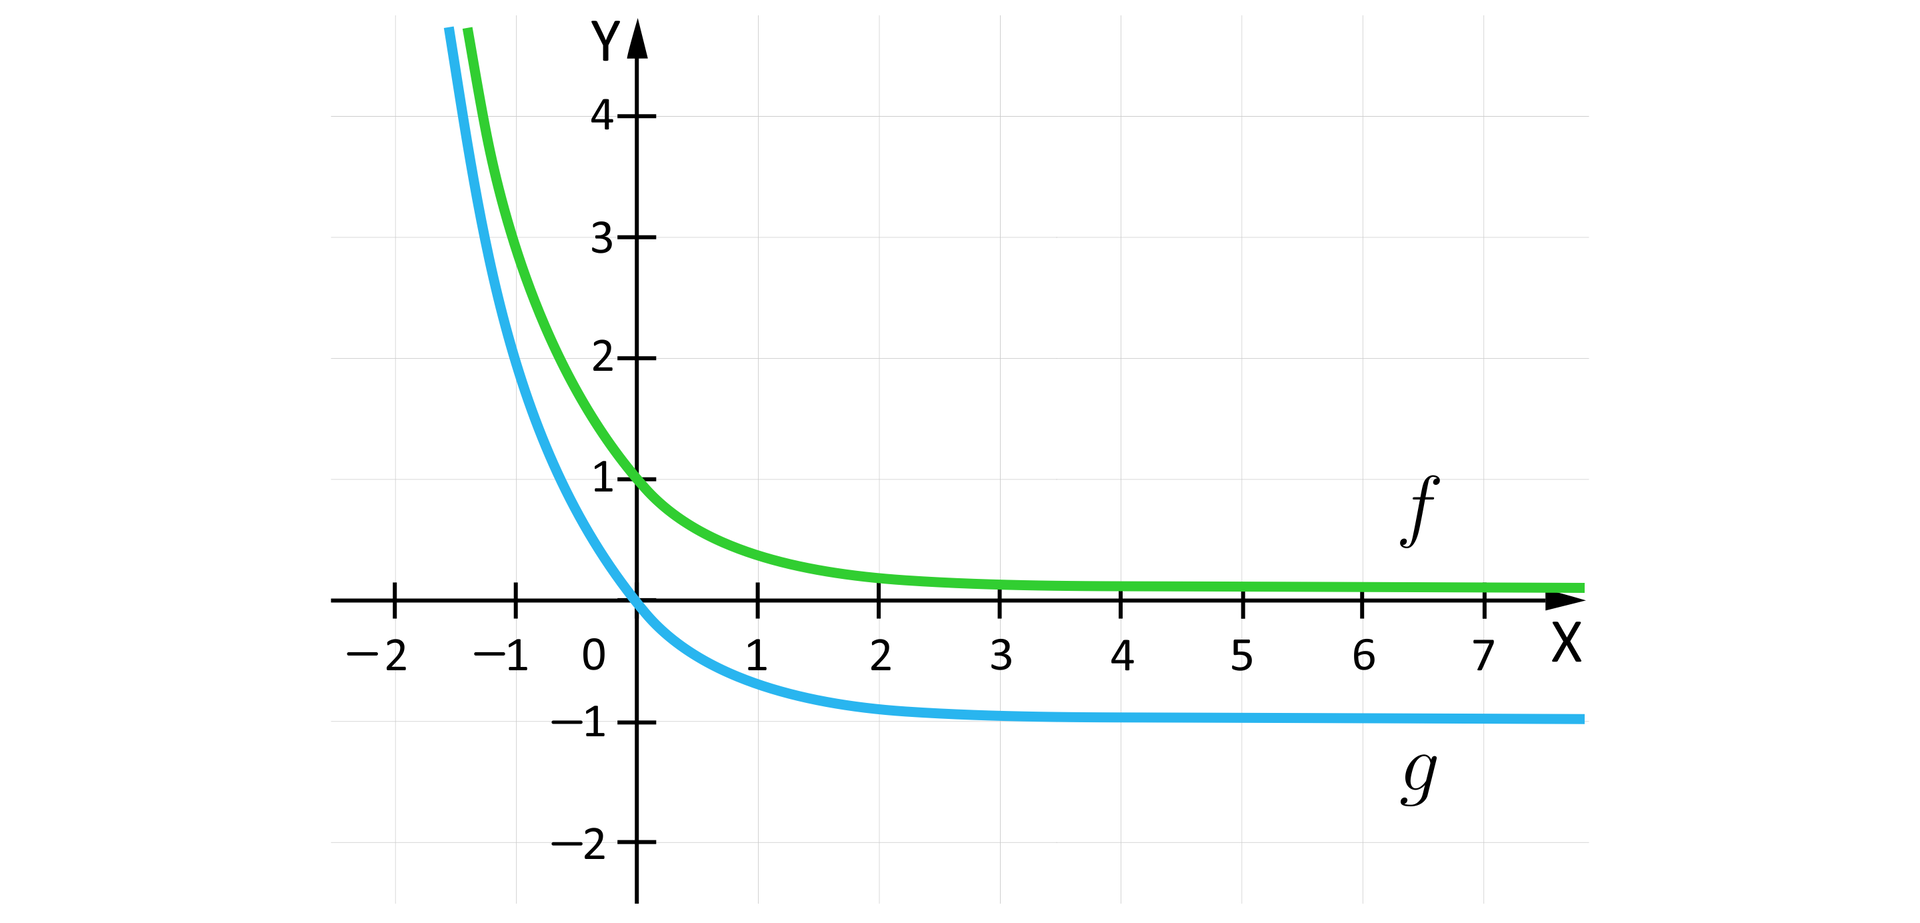 Rysunek przedstawia układ współrzędnych z poziomą osią X od minus dwóch do siedmiu oraz z pionową osią  Y od minus dwóch do czterech. Na płaszczyźnie narysowane są wykresy funkcji  fx=13x  oraz poniżej funkcji gx=13x-1. Wykres funkcji f przecina punkt o współrzędnych:  0;1, a wykres funkcji g, który jest wykresem  funkcji f przesuniętym o jedną jednostkę w dół, przechodzi przez punkt o współrzędnych  0;0.